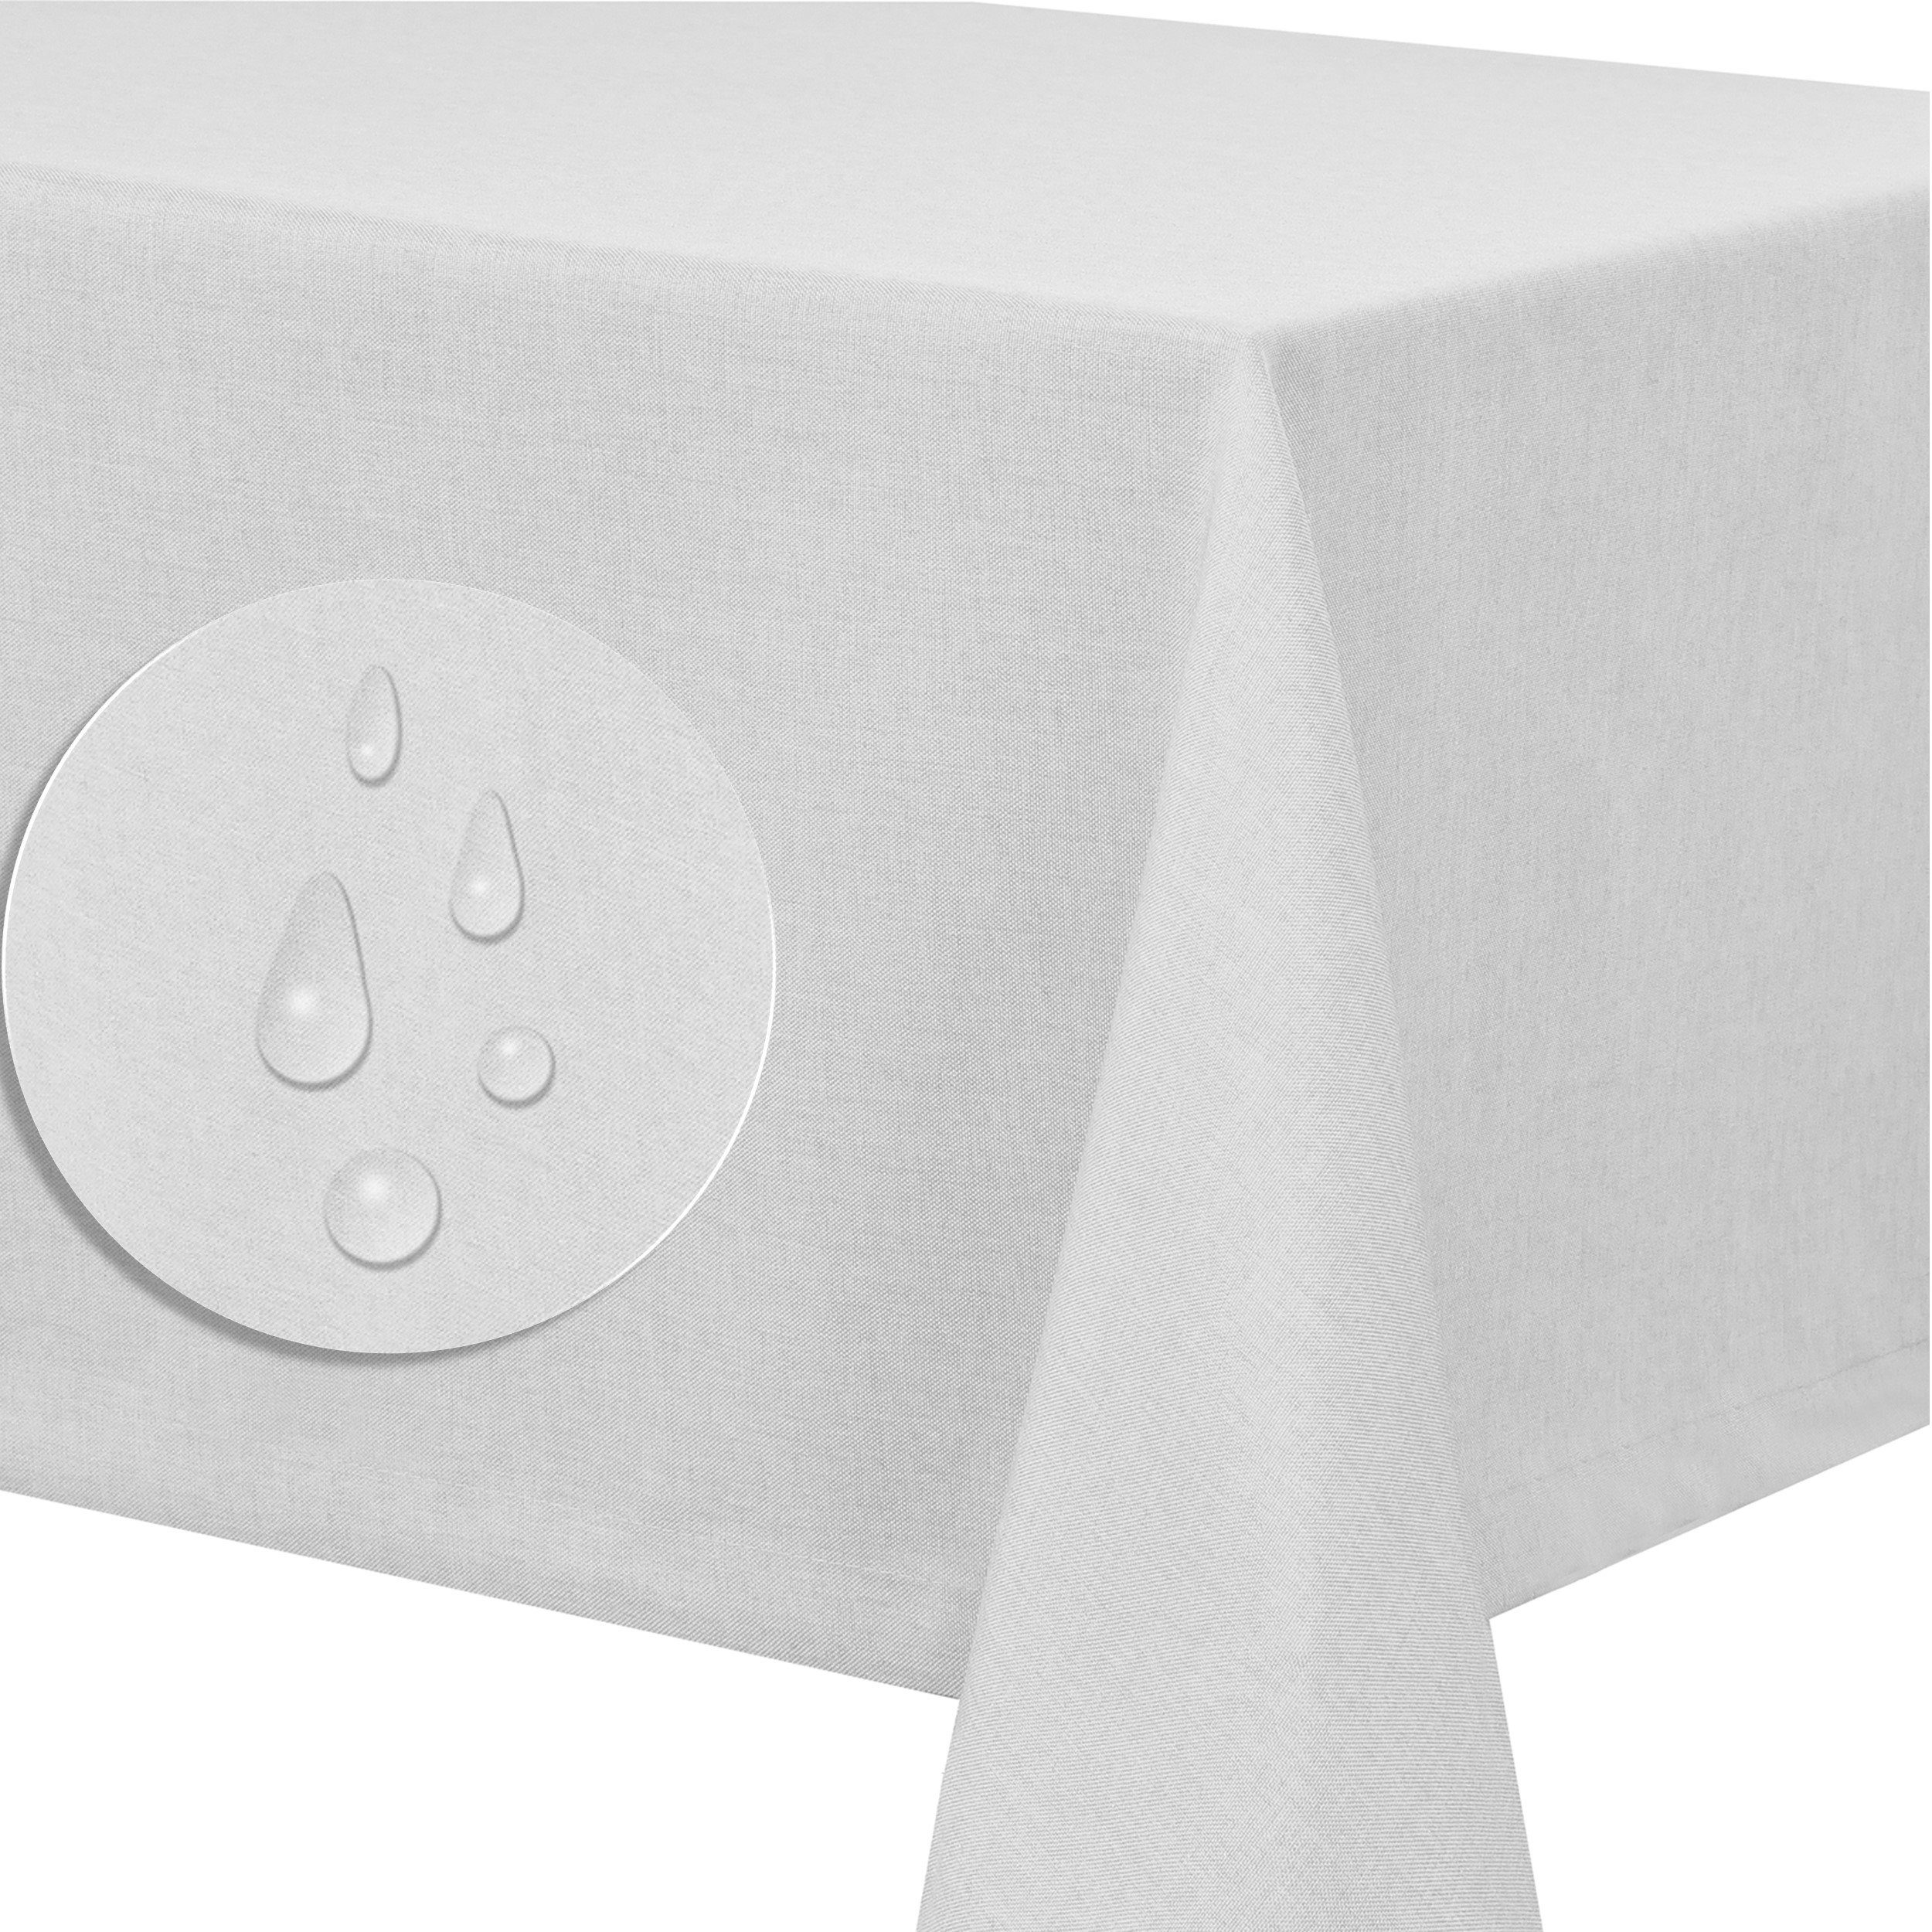 Optik Tischdecke Lotuseffekt abwaschbar Tischdecke Fiora Tischtuch Leinen schmutzabweisend Leinenstruktur tafeltuch pflegeleicht